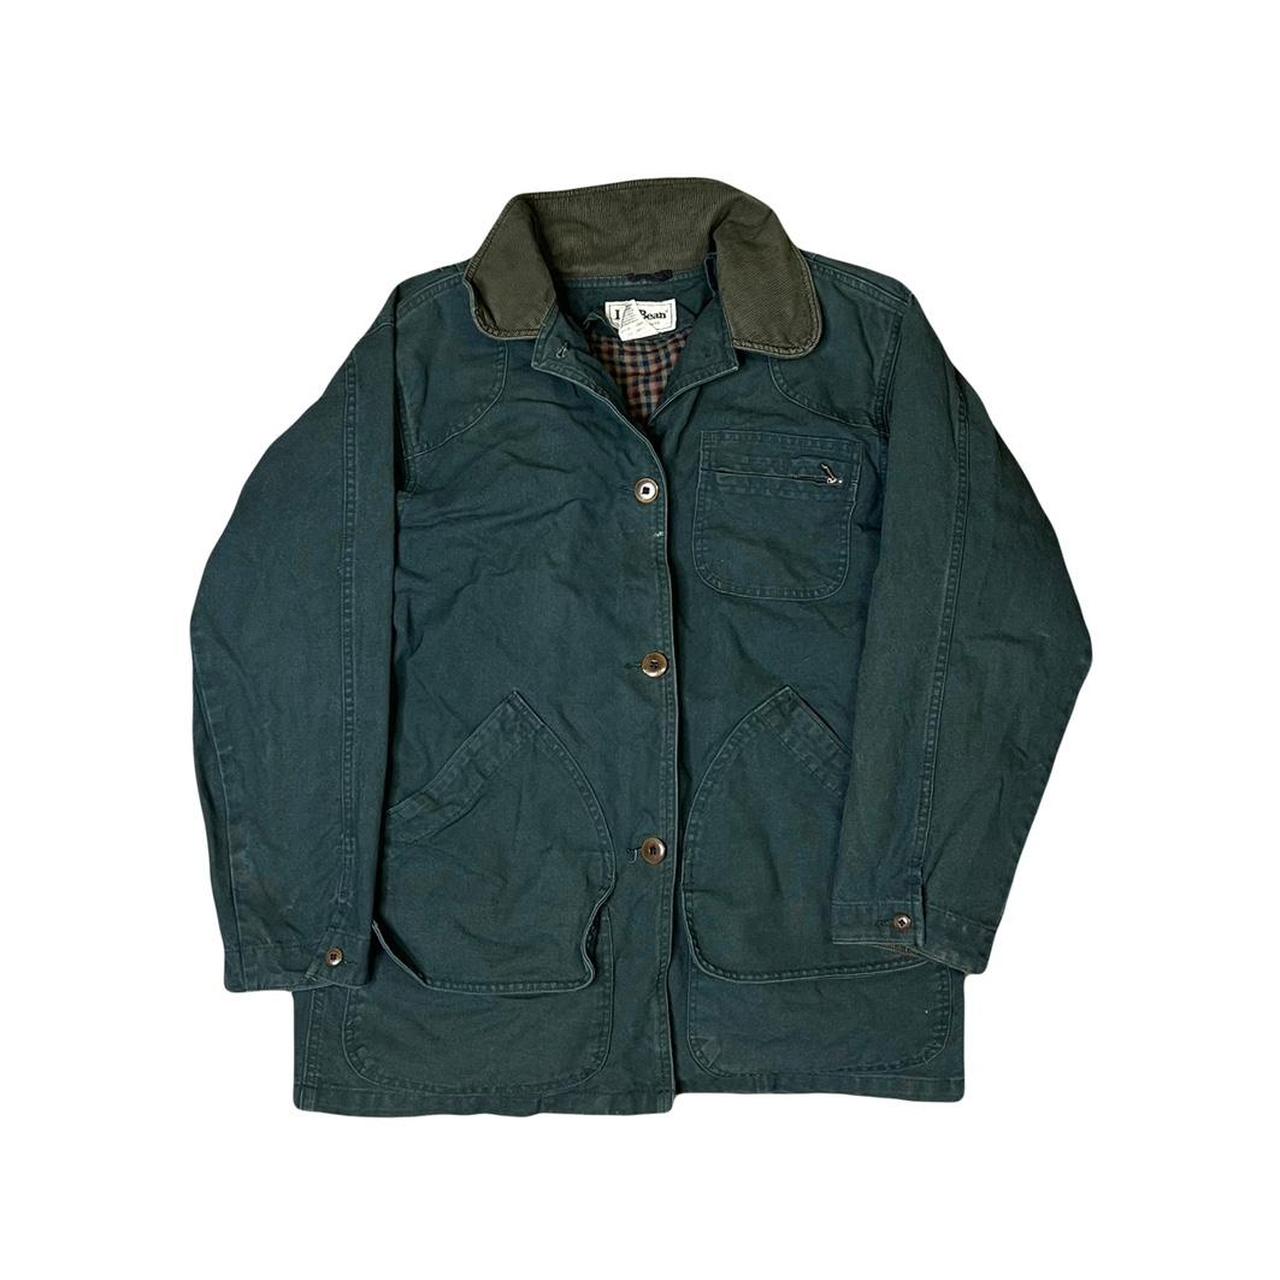 Vintage L.L.Bean Flannel Lined Jacket Vintage... - Depop